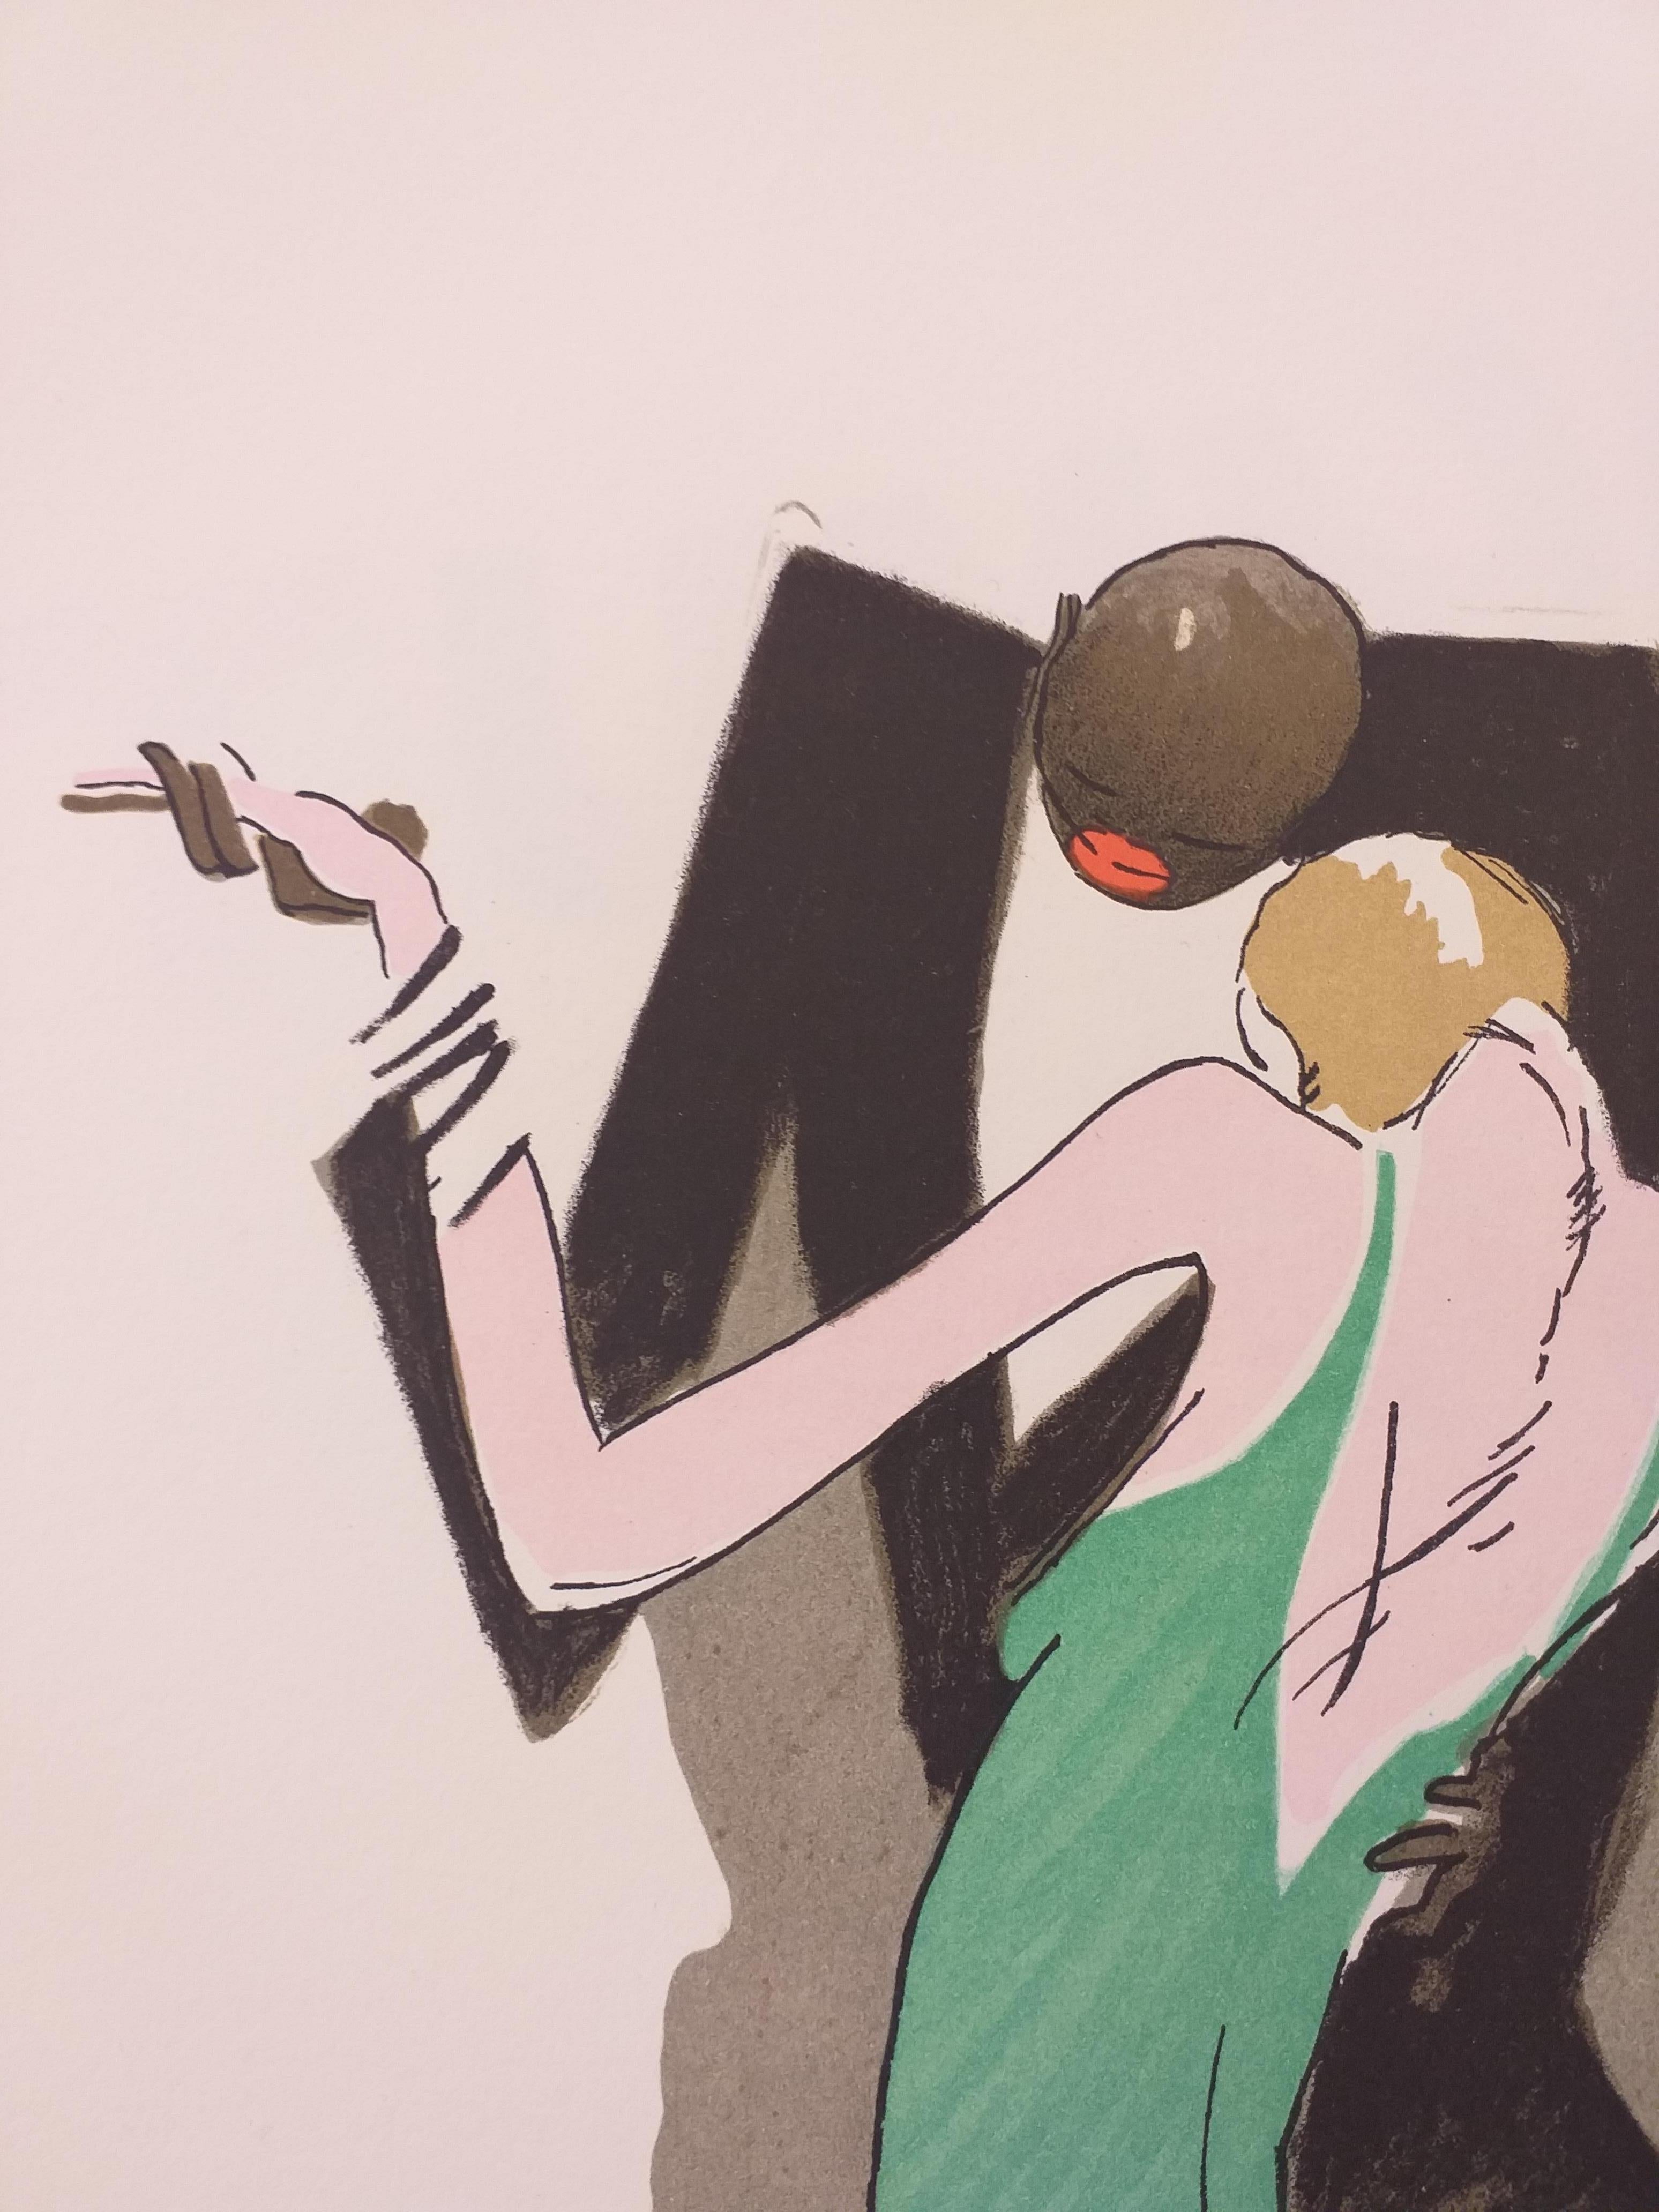 Paul Colin Affichiste
1892 - 1985
Lorsque la jeune danseuse de music-hall afro-américaine Joséphine Baker et l'affichiste Paul Colin se rencontrent lors des répétitions de la Revue Nègre
à Paris en 1925, tous deux étaient encore inconnus du grand